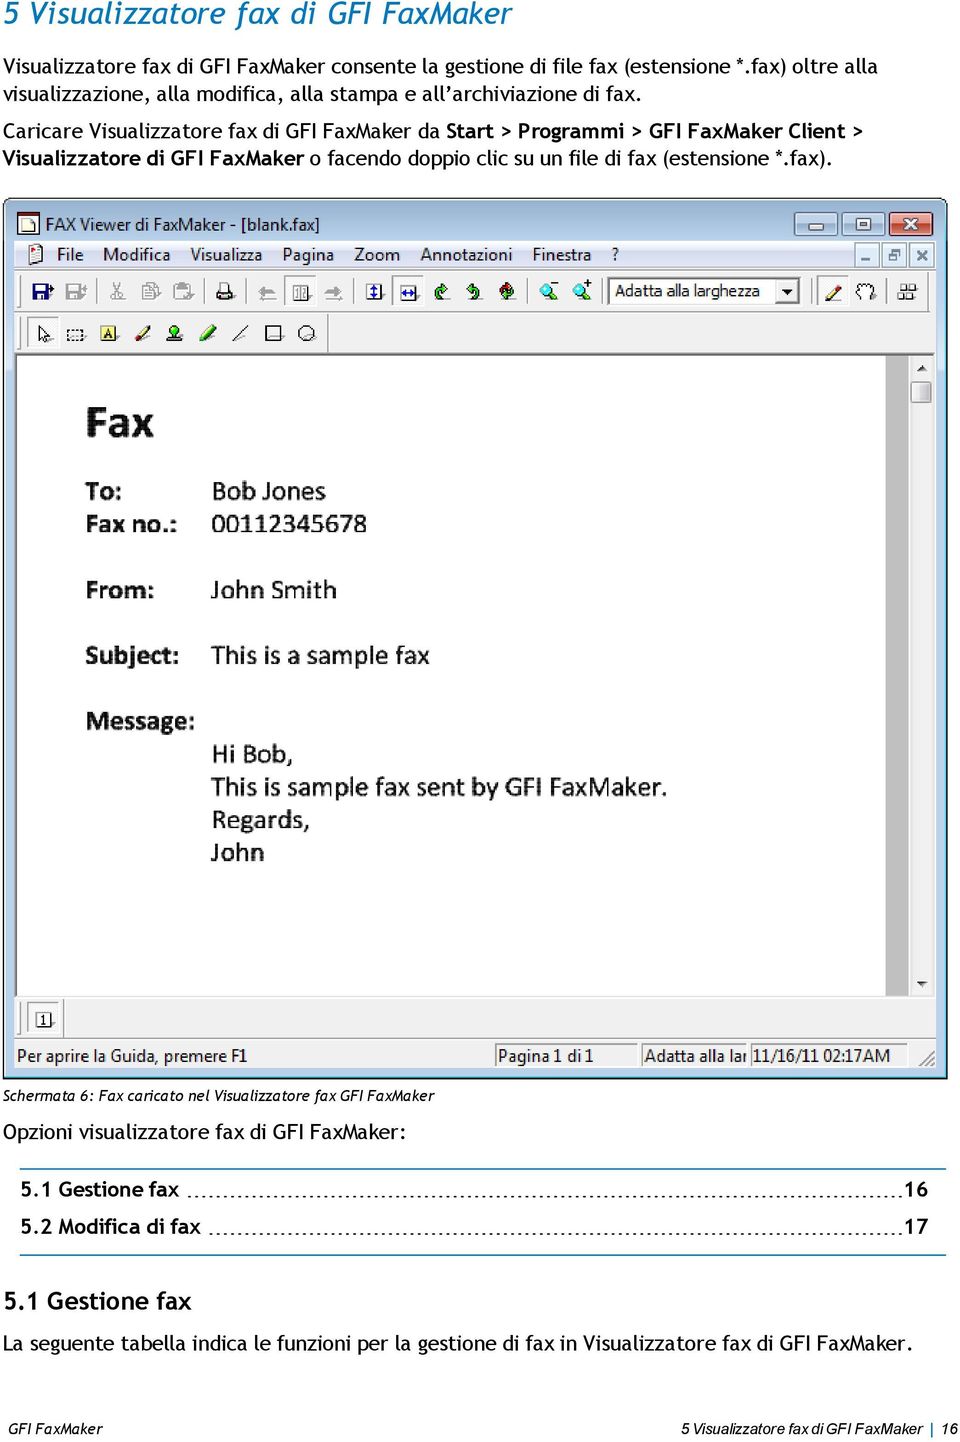 Caricare Visualizzatore fax di GFI FaxMaker da Start > Programmi > GFI FaxMaker Client > Visualizzatore di GFI FaxMaker o facendo doppio clic su un file di fax (estensione *.